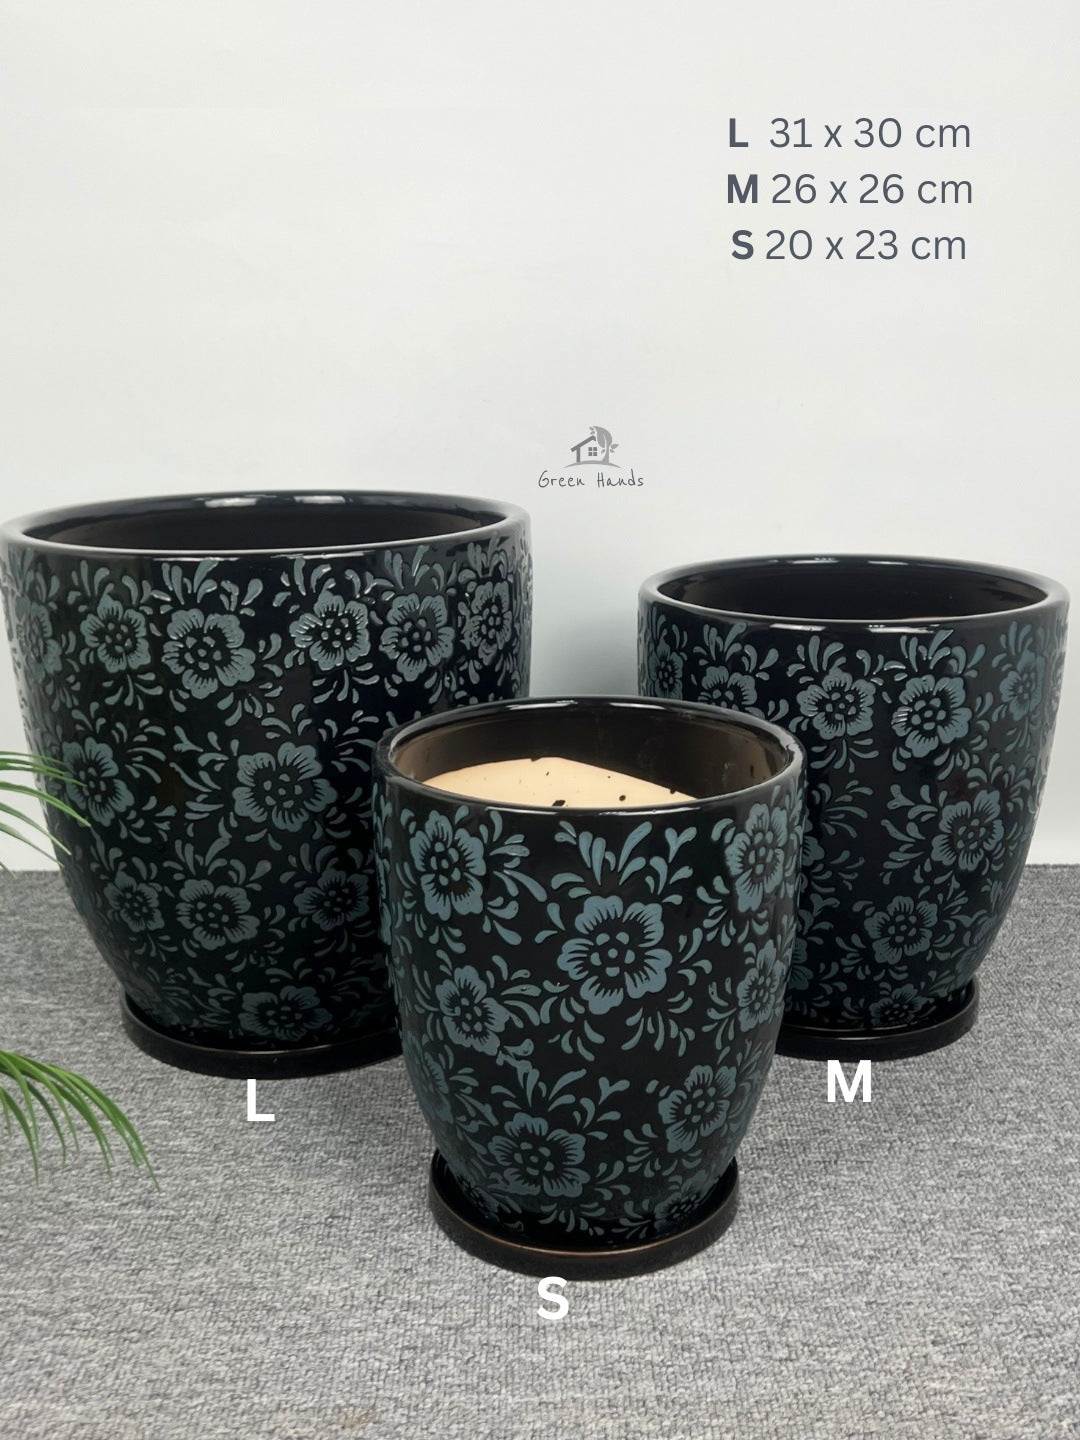 Japanese Art-Inspired Ceramic Pots